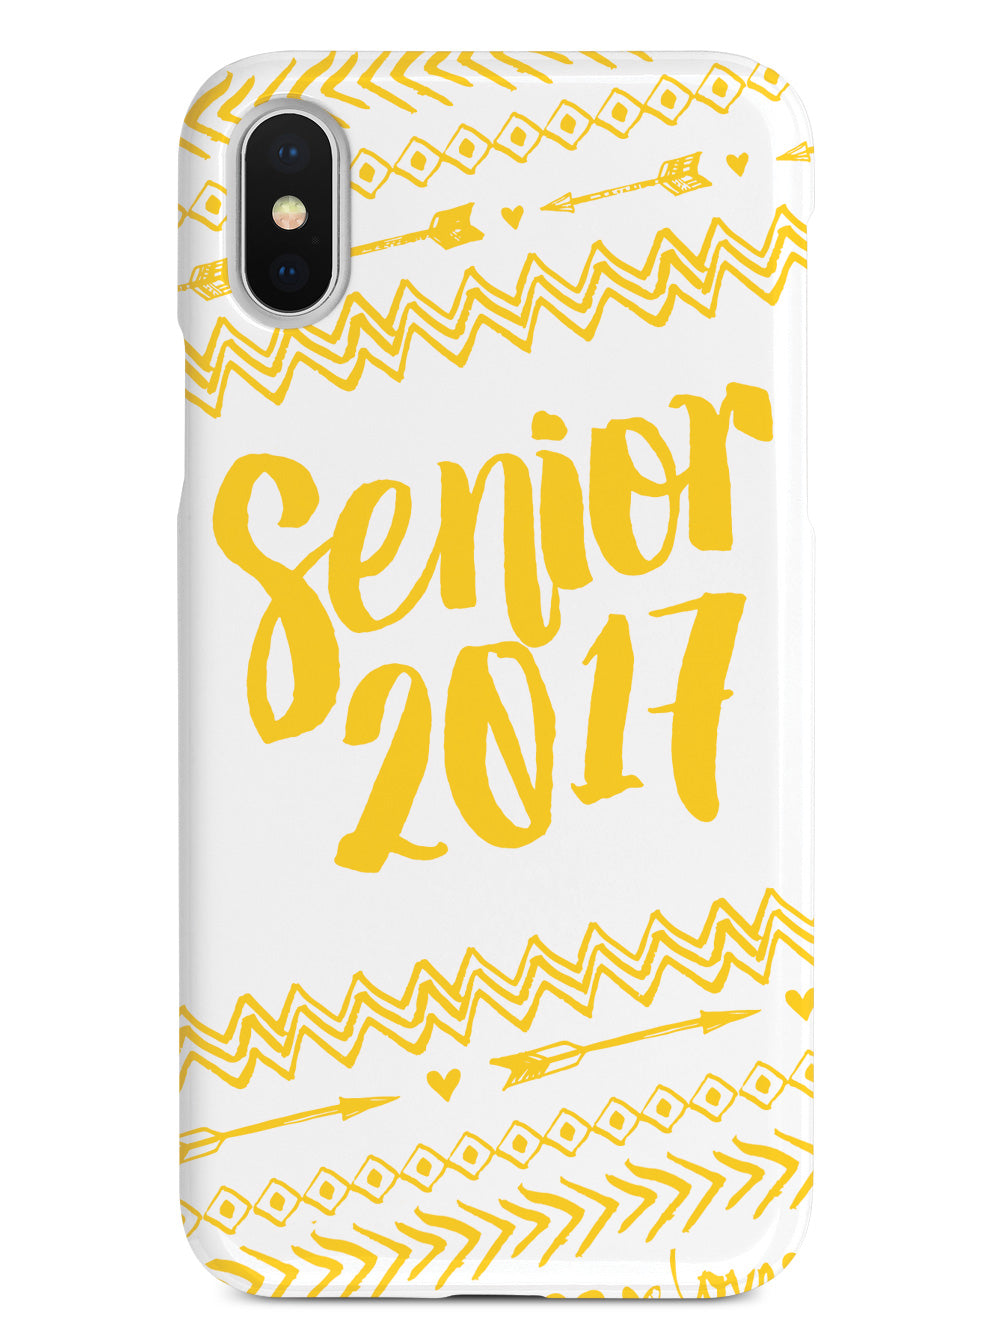 Senior 2017 - Yellow Case